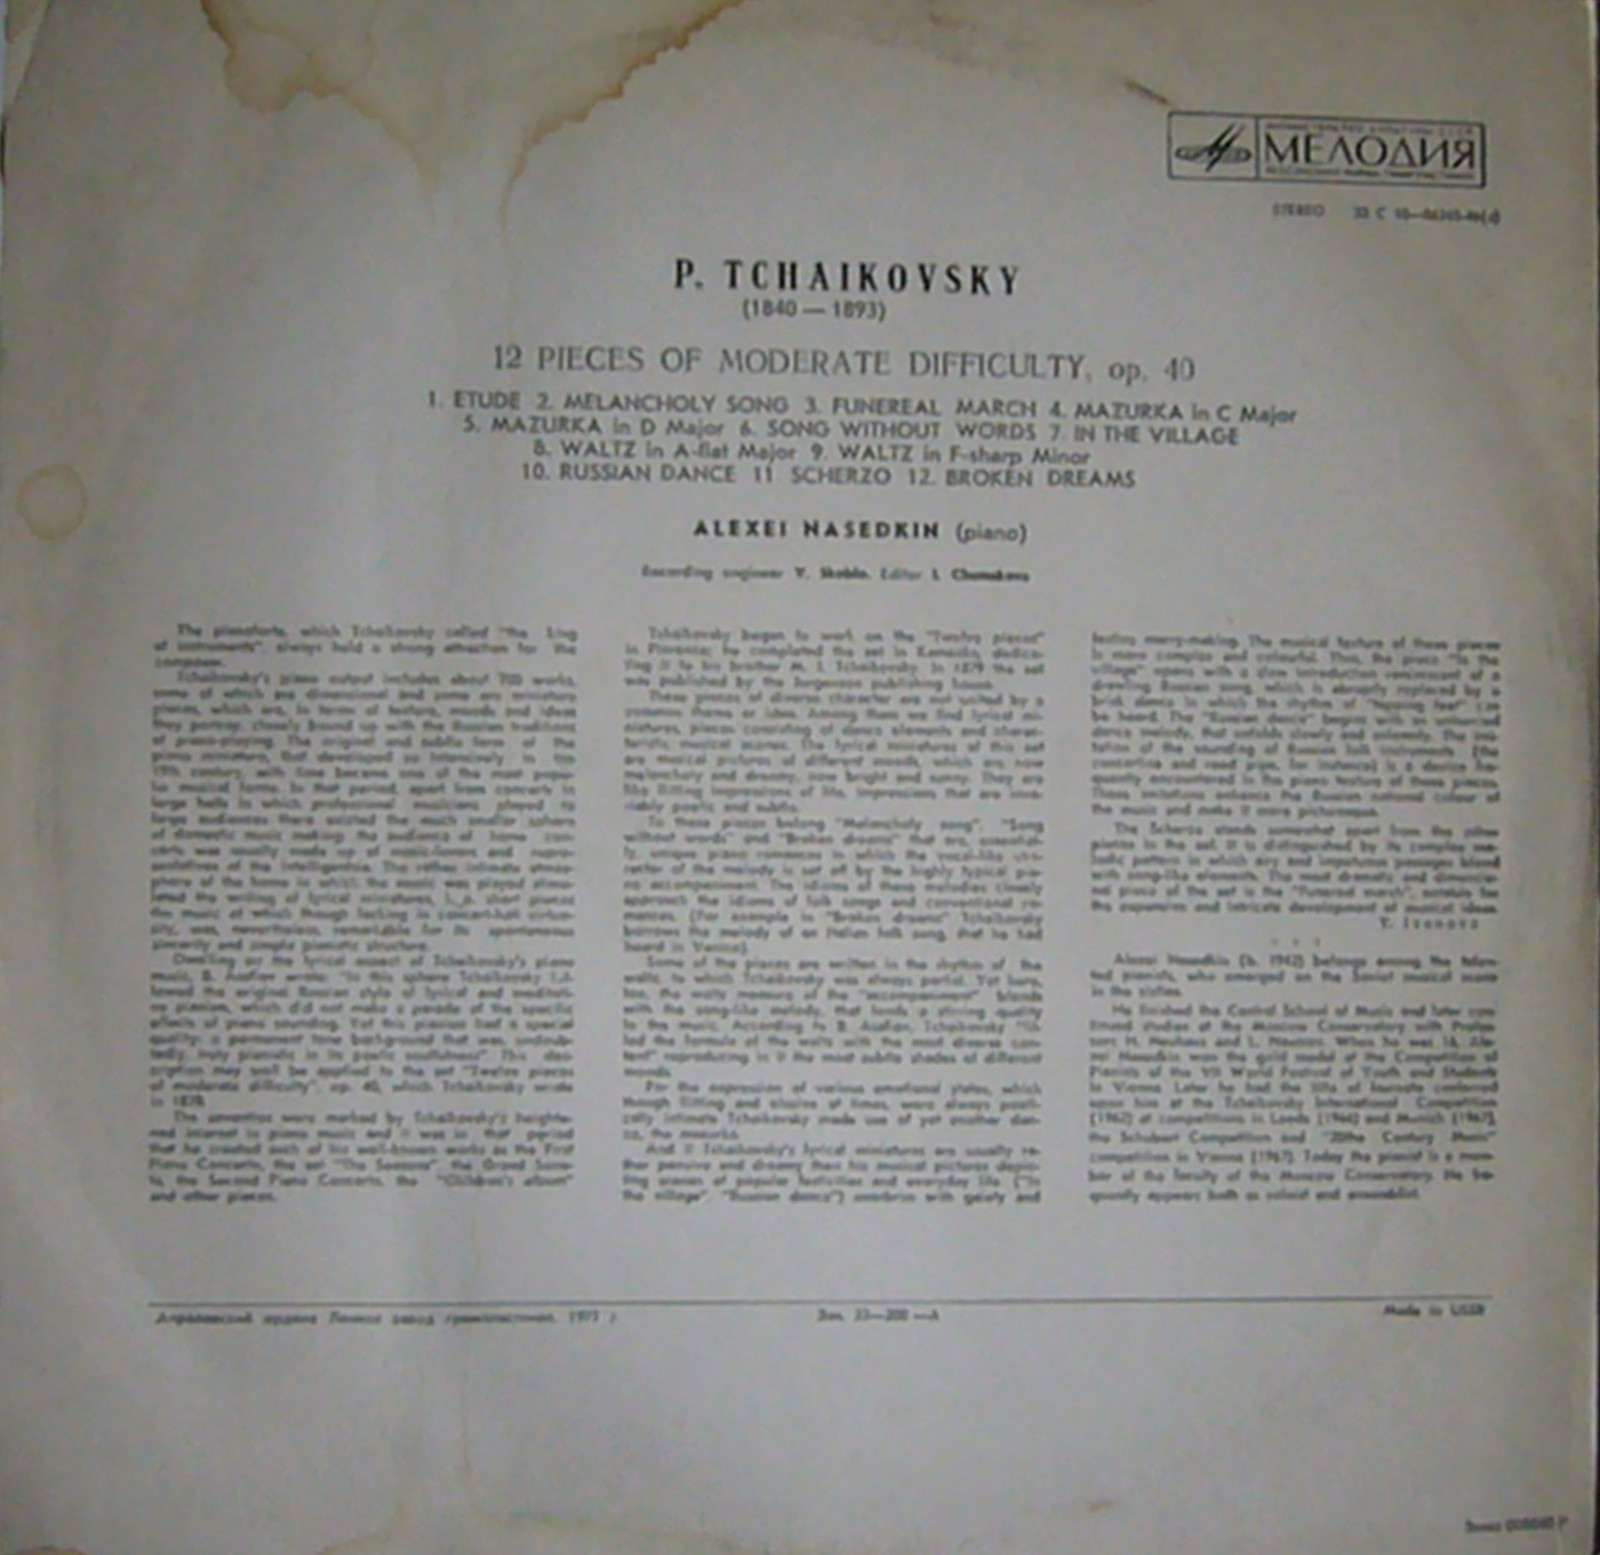 П. ЧАЙКОВСКИЙ (1840–1893) Двенадцать пьес средней трудности для ф-но, соч. 40 (А. Наседкин)